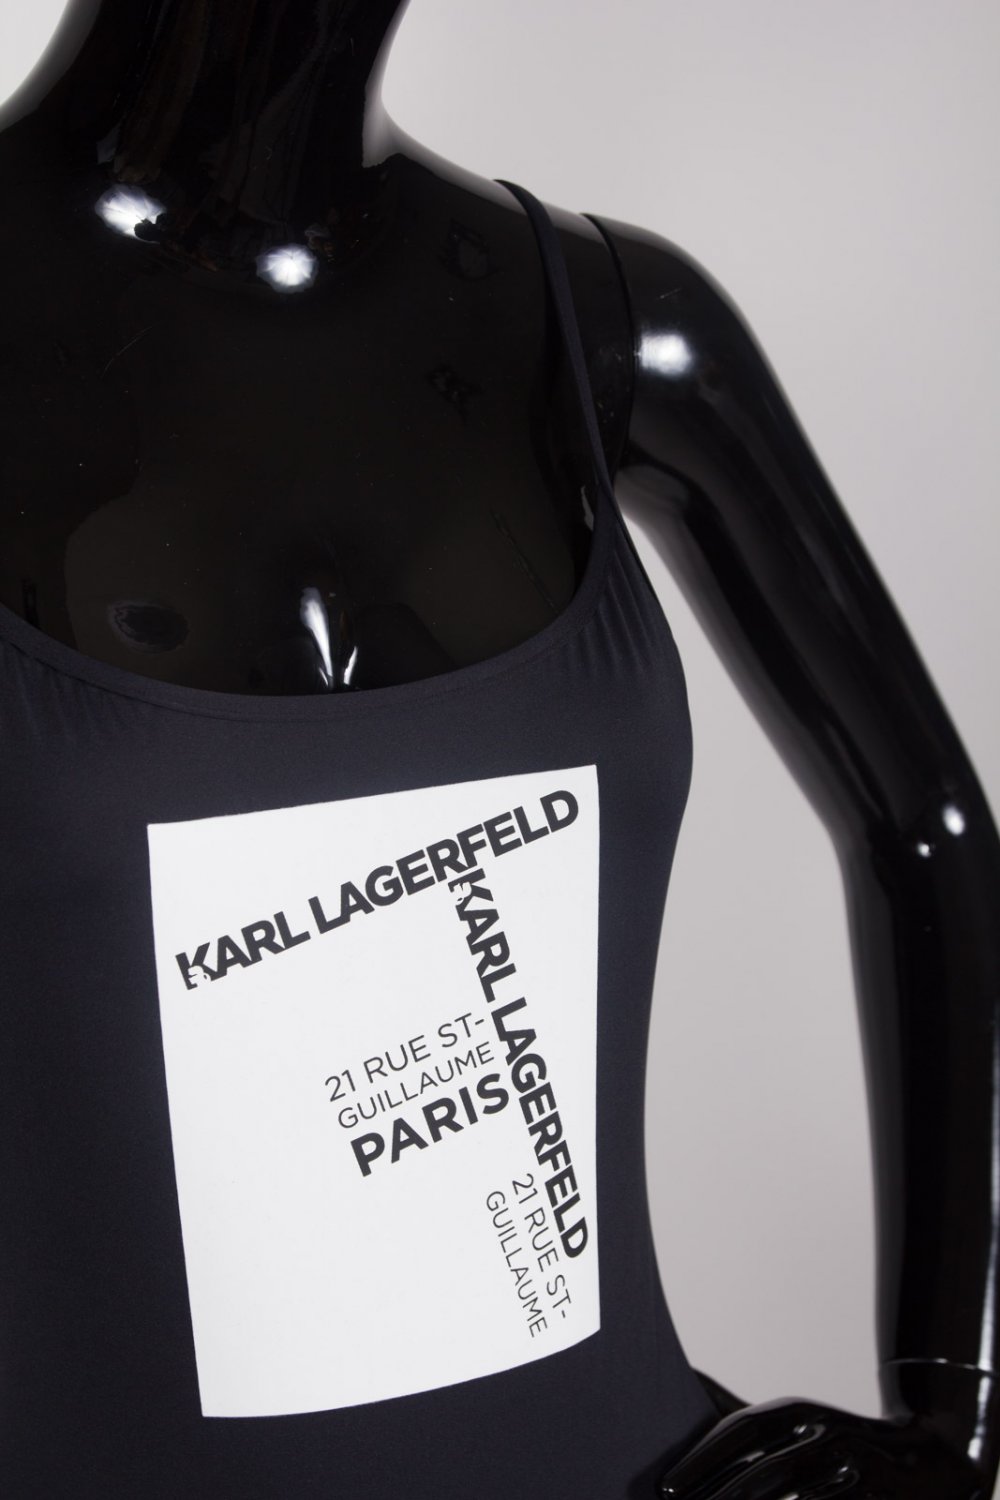 náhled Dámské celkové plavky Karl Lagerfeld